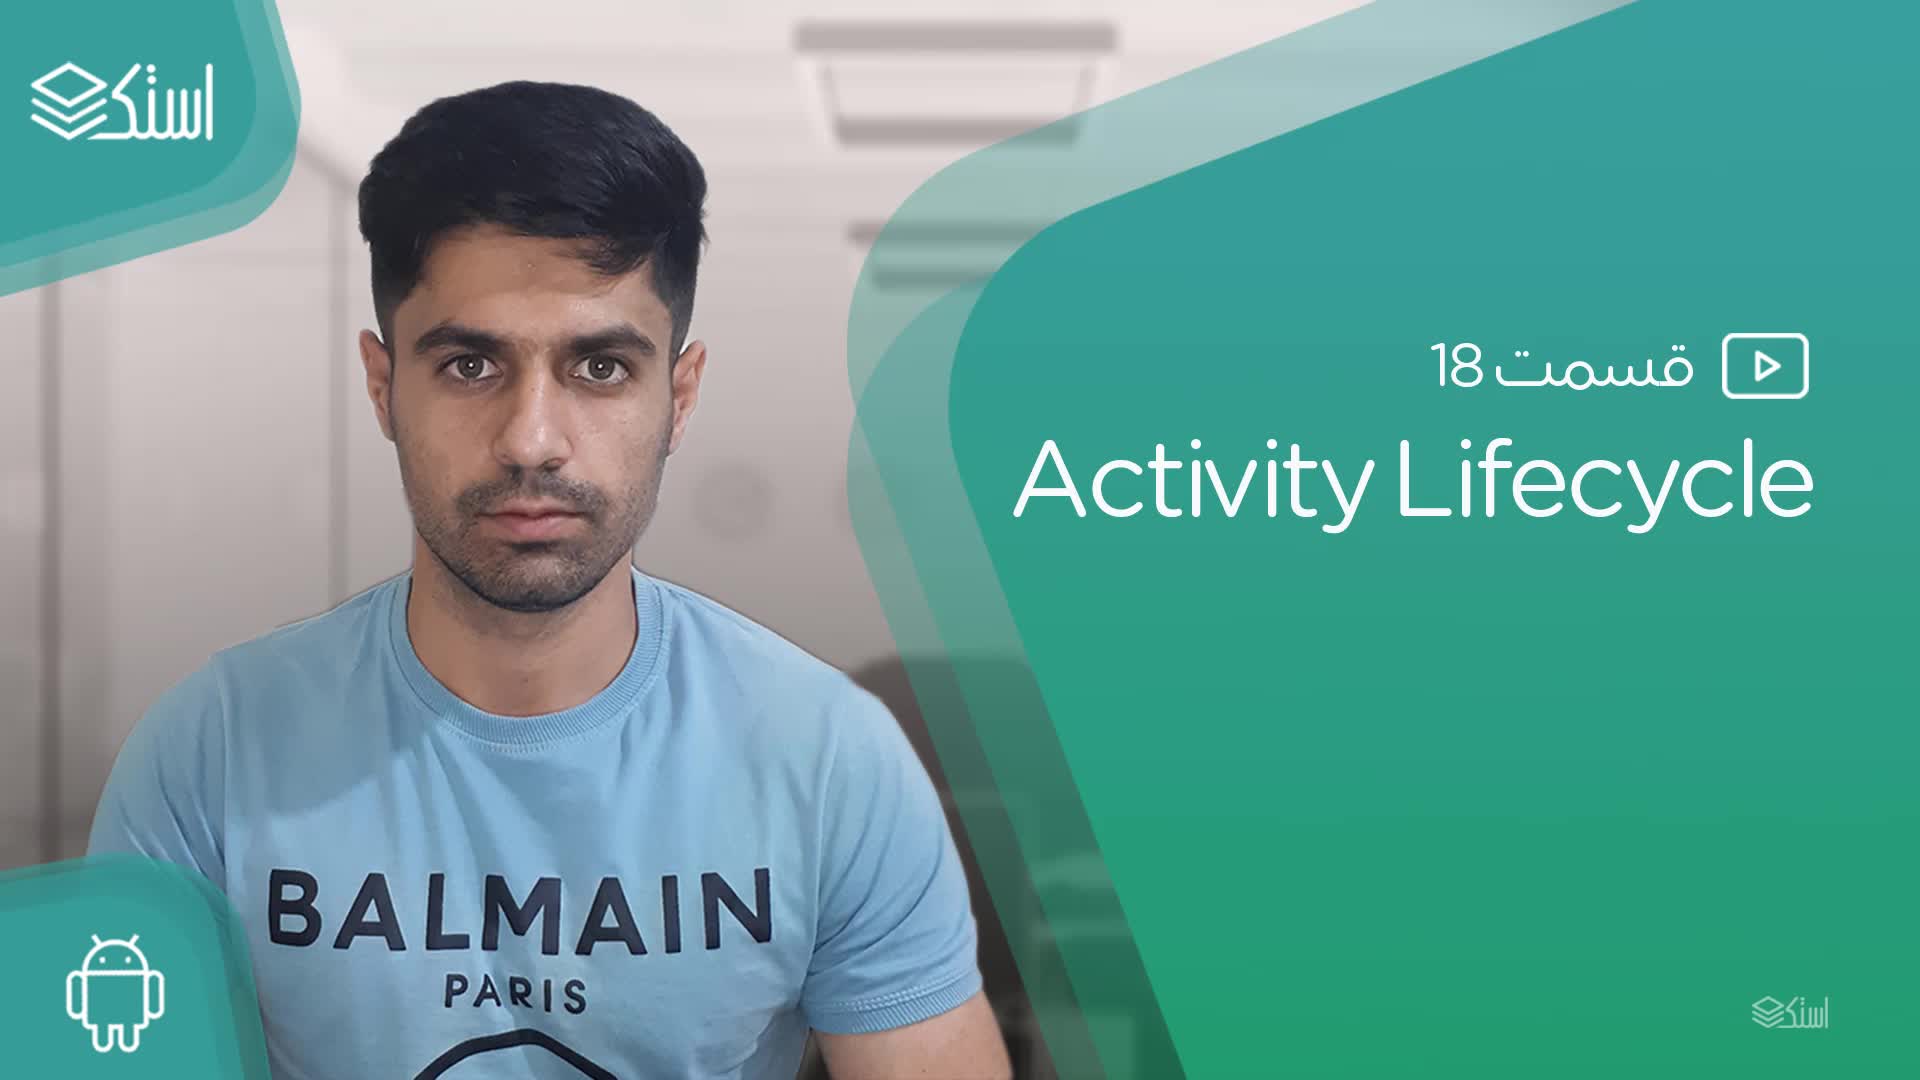 آموزش Activity Lifecycle چرخه حیات اکتیویتی (ویدیو + توضیحات) - قسمت 18 استک لرن